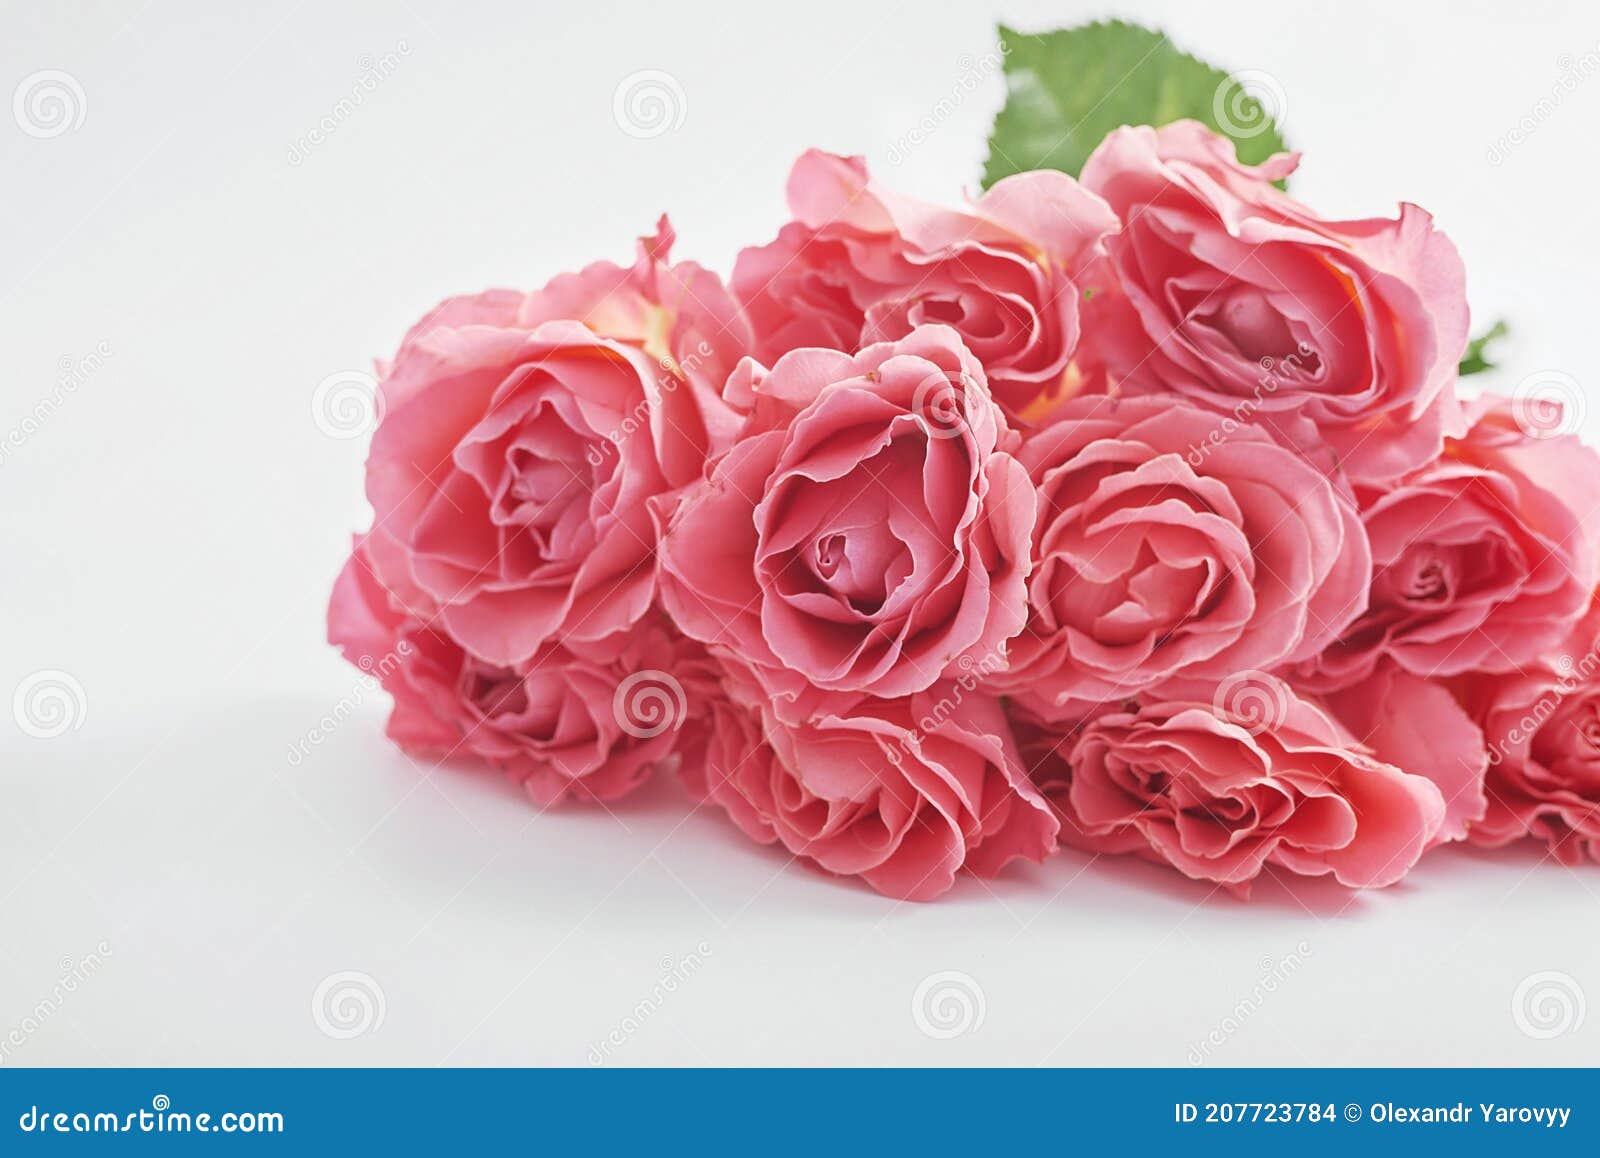 Carte De Voeux Valentines Bouquet De Fleurs Roses Fete Des Meres Modele Joyeux Anniversaire Invite De Mariage Photo Stock Image Du Fleur Mere